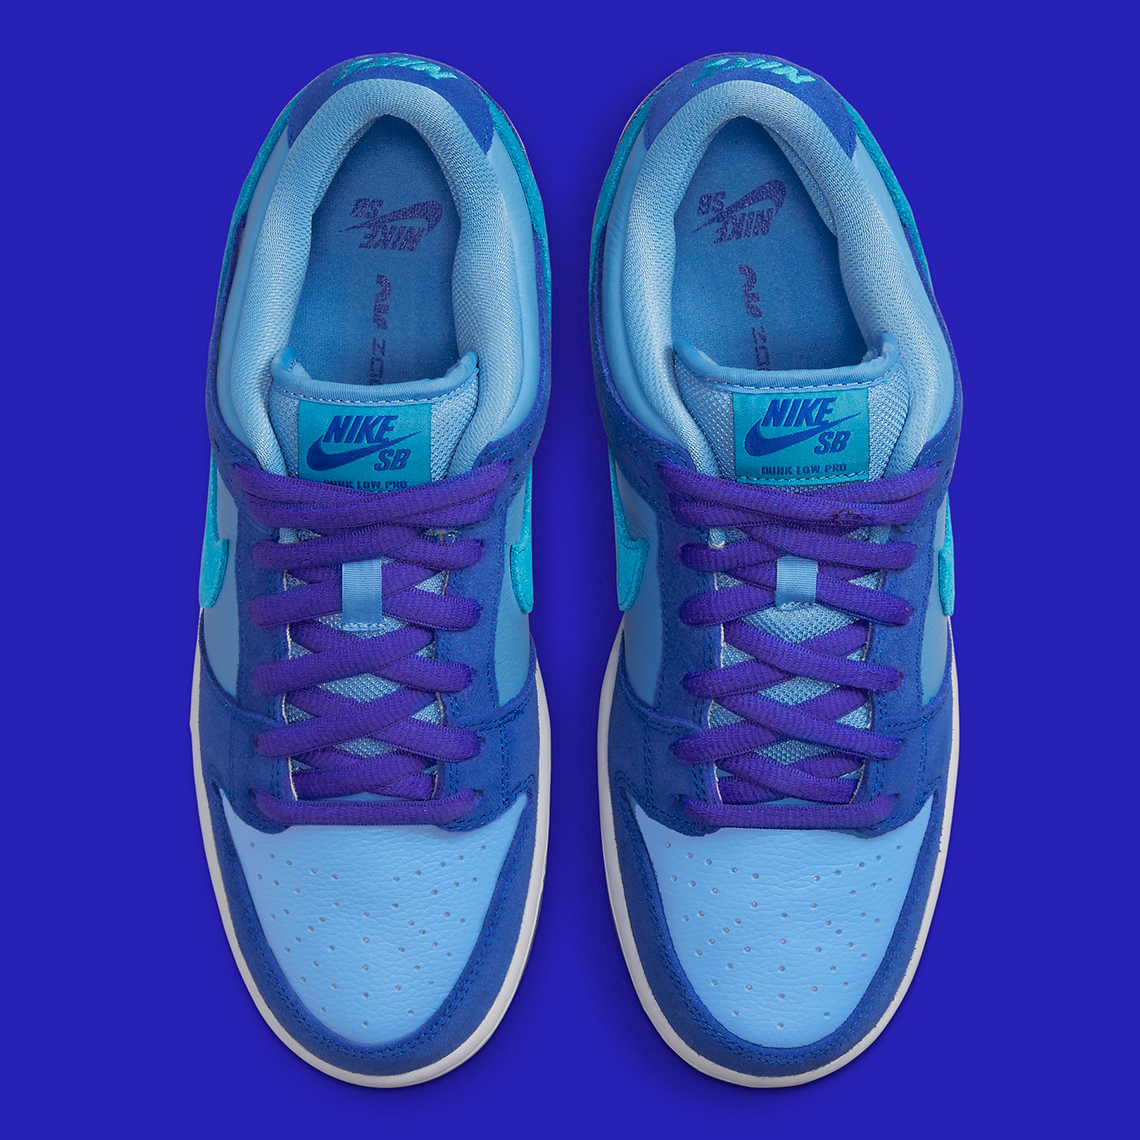 Nike Sb Dunk Low Blue Raspberry Dm0807 400 Release Date 7